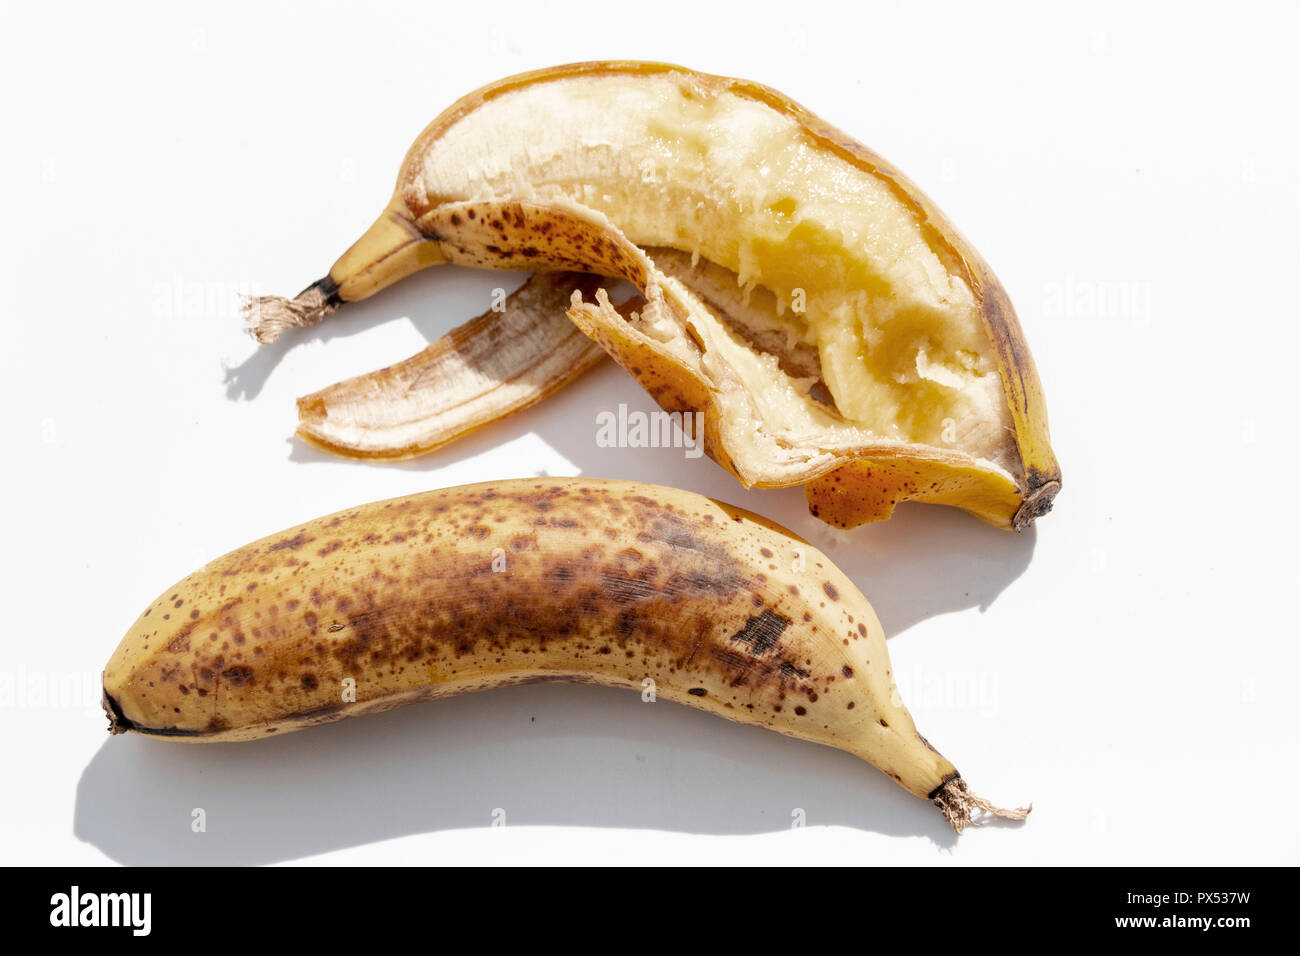 Eine Nahaufnahme von zwei reife, gelbe Bananen, geknallt hat Abd auf der einen Seite nebeneinander auf einem isolierten weißen Hintergrund geöffnet Stockfoto